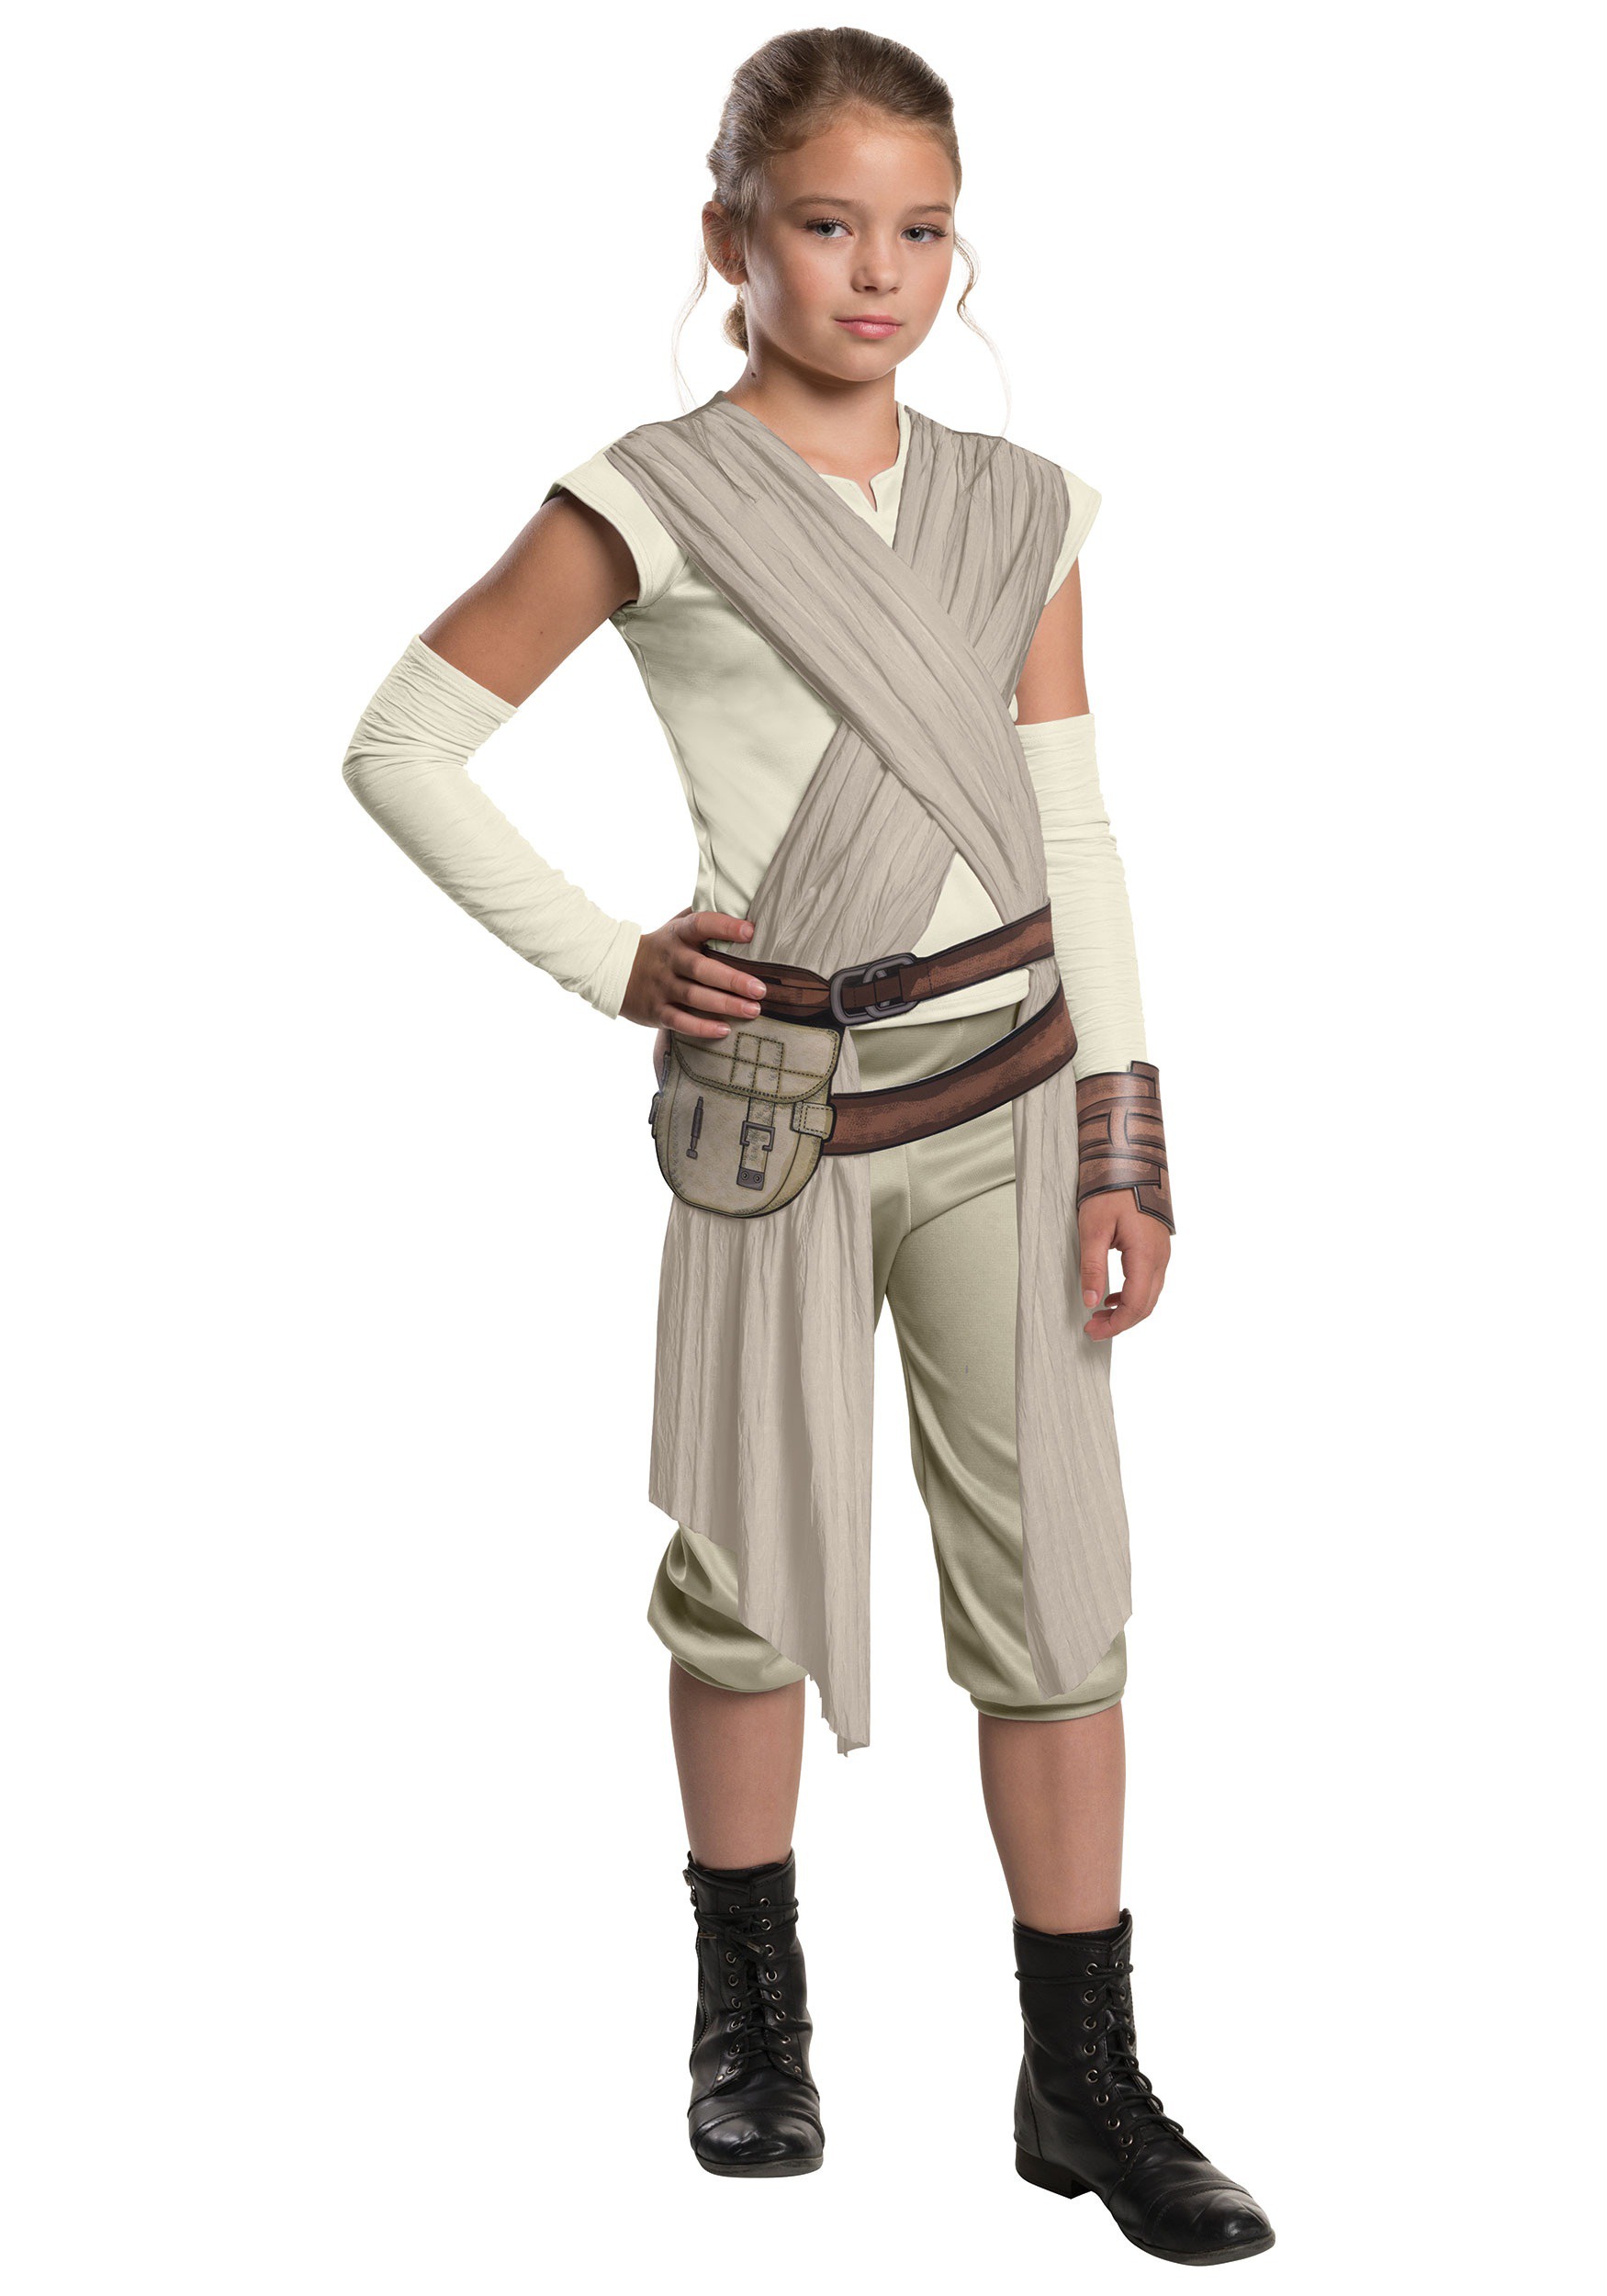 Niños CHICOS CHILDS DISFRAZ DE Jedi Robe Vestido de fantasía Traje De Star Wars Han Solo